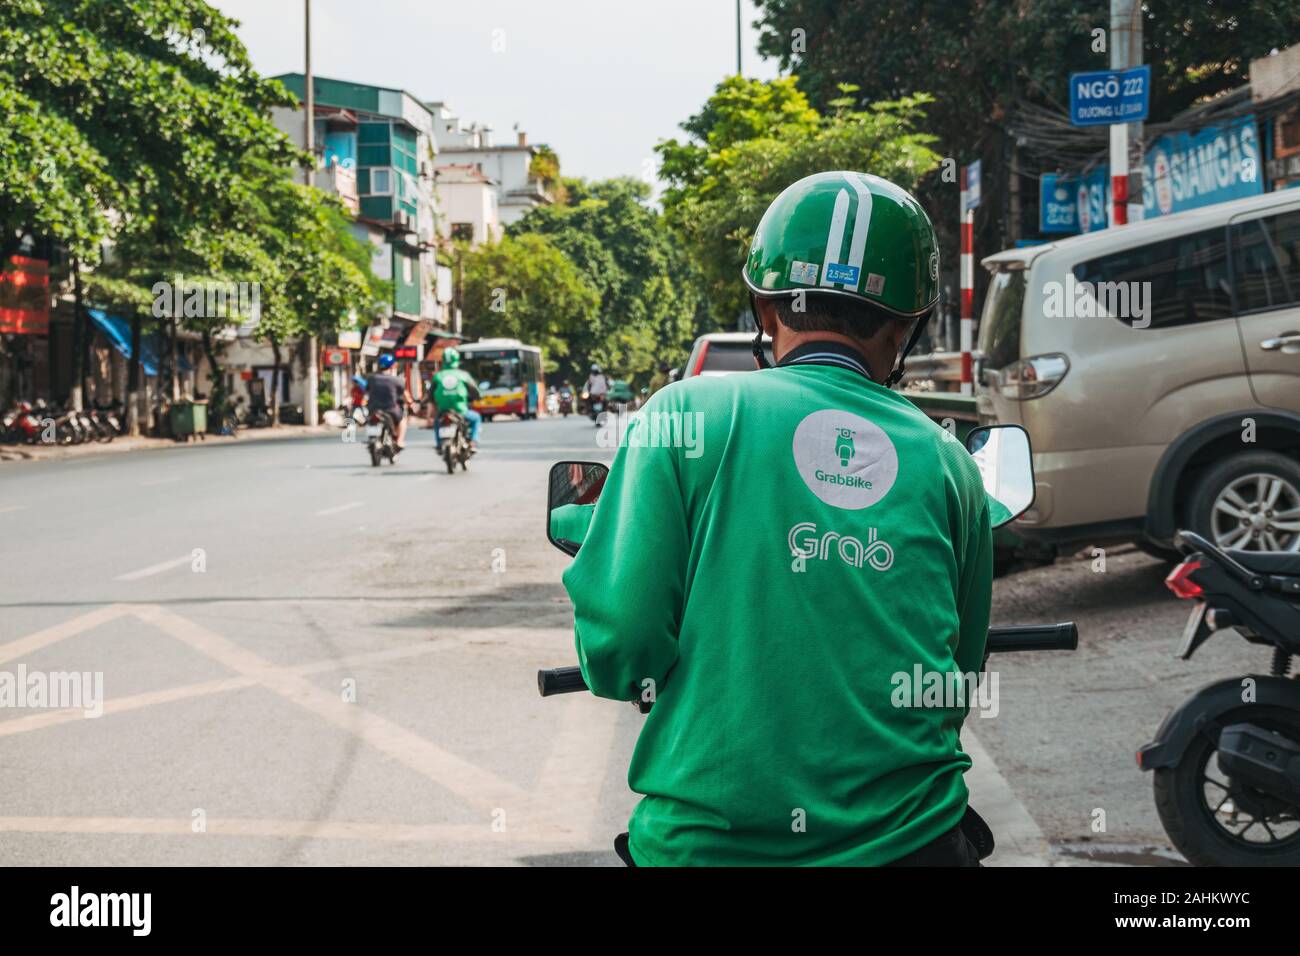 Un Grab ciclista verifica su telefono esperando el siguiente trabajo en Hanoi, Vietnam. Grab es más popular del Sudeste de Asia paseo saludando y entrega app Foto de stock